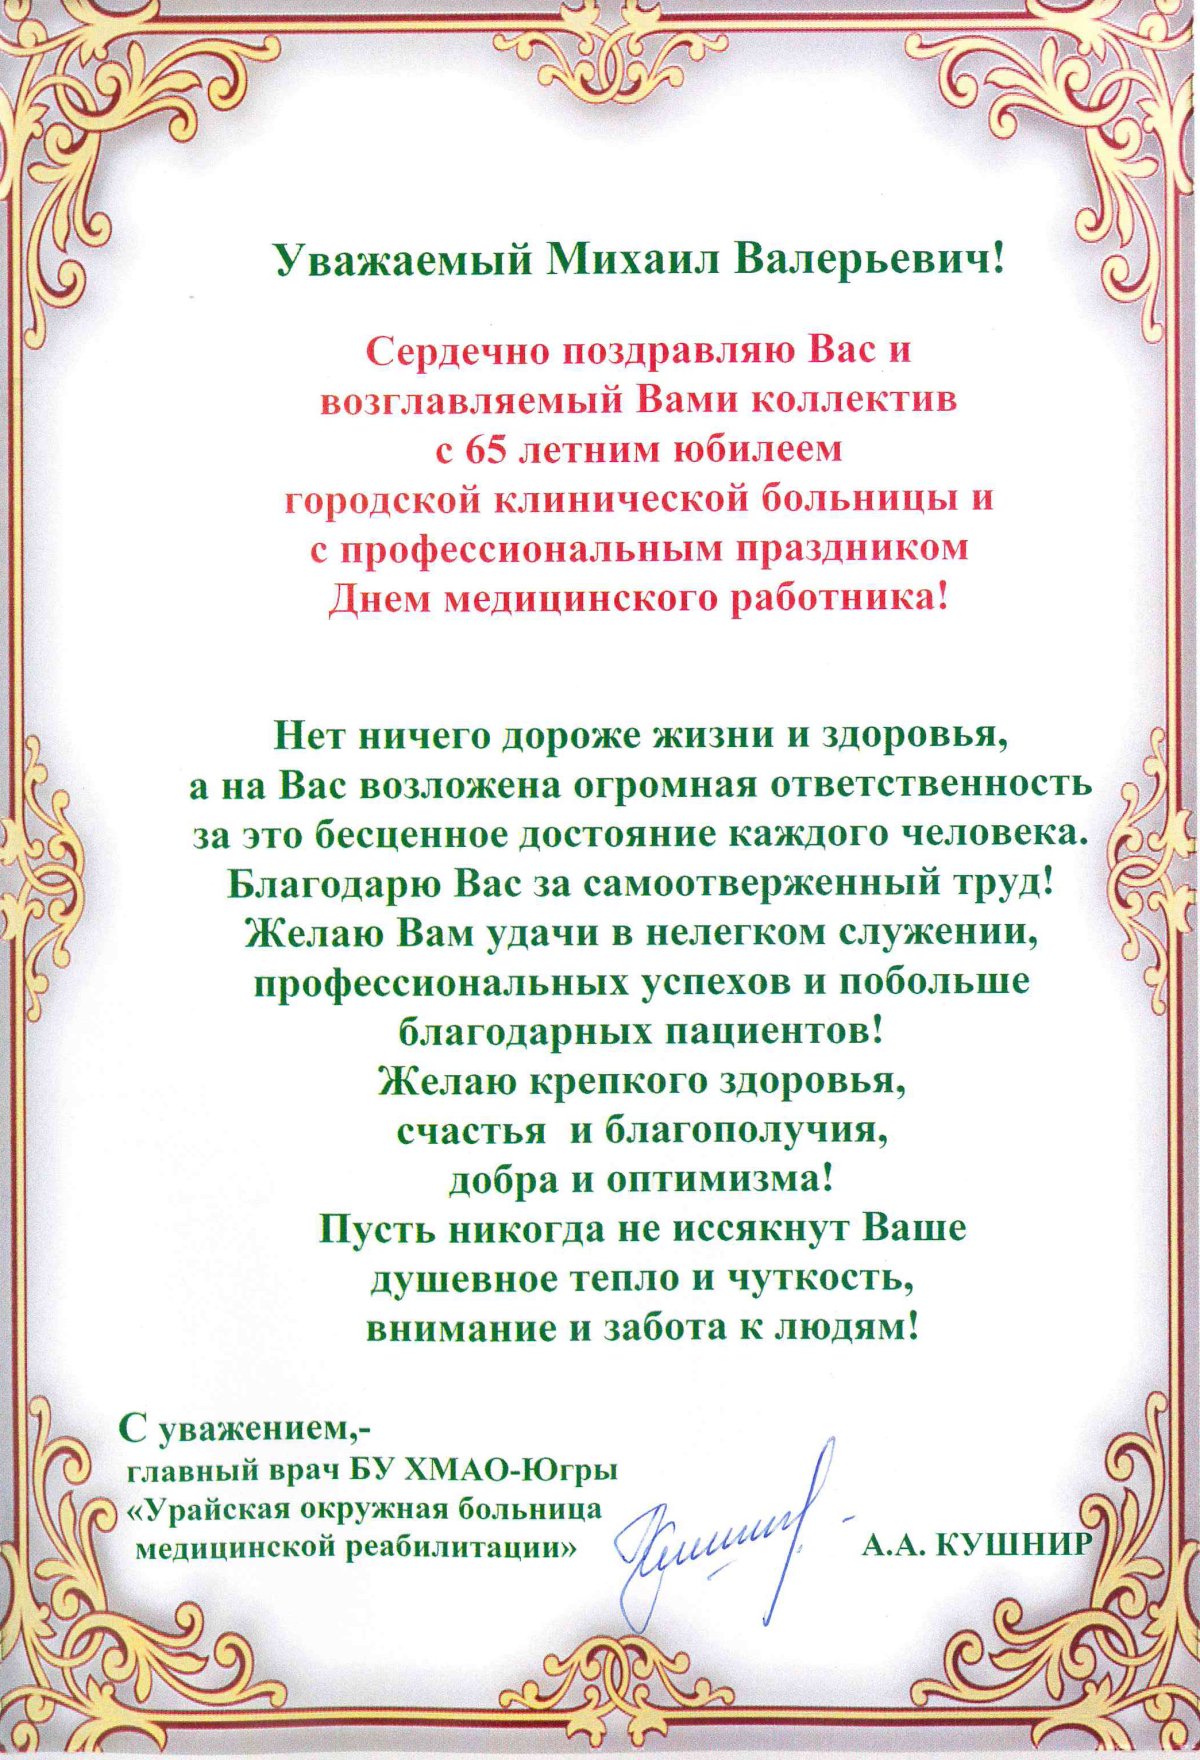 Поздравление с юбилеем - ГКБ Кончаловского